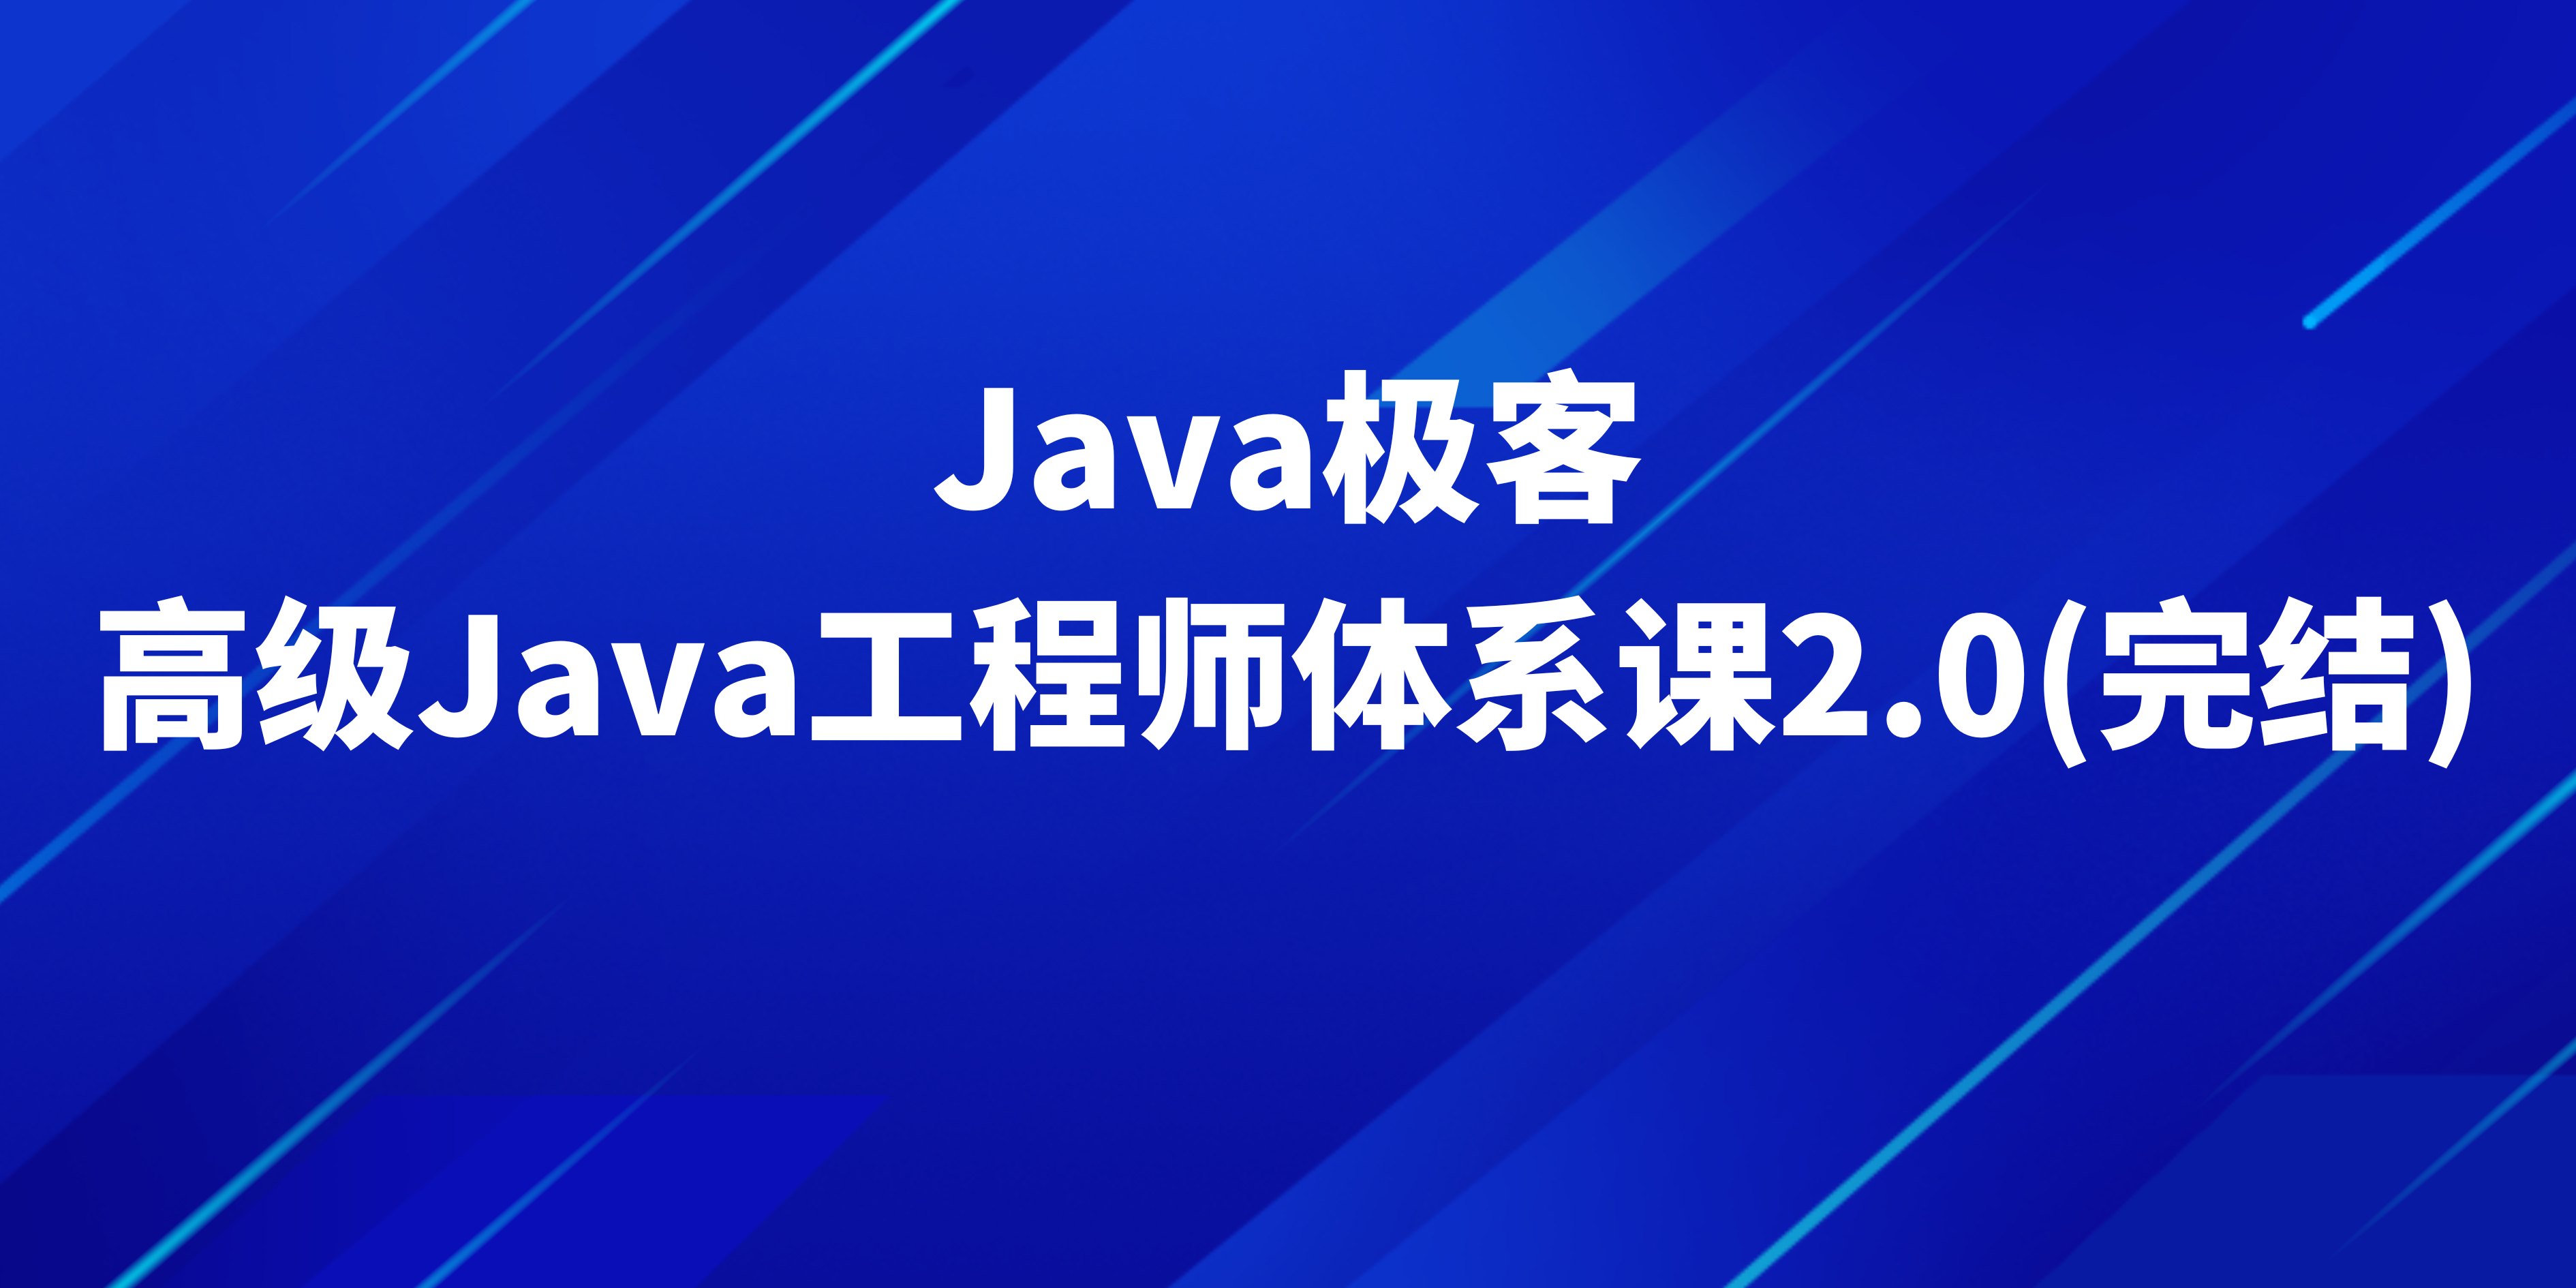 极客高级Java工程师体系课2.0(完结)